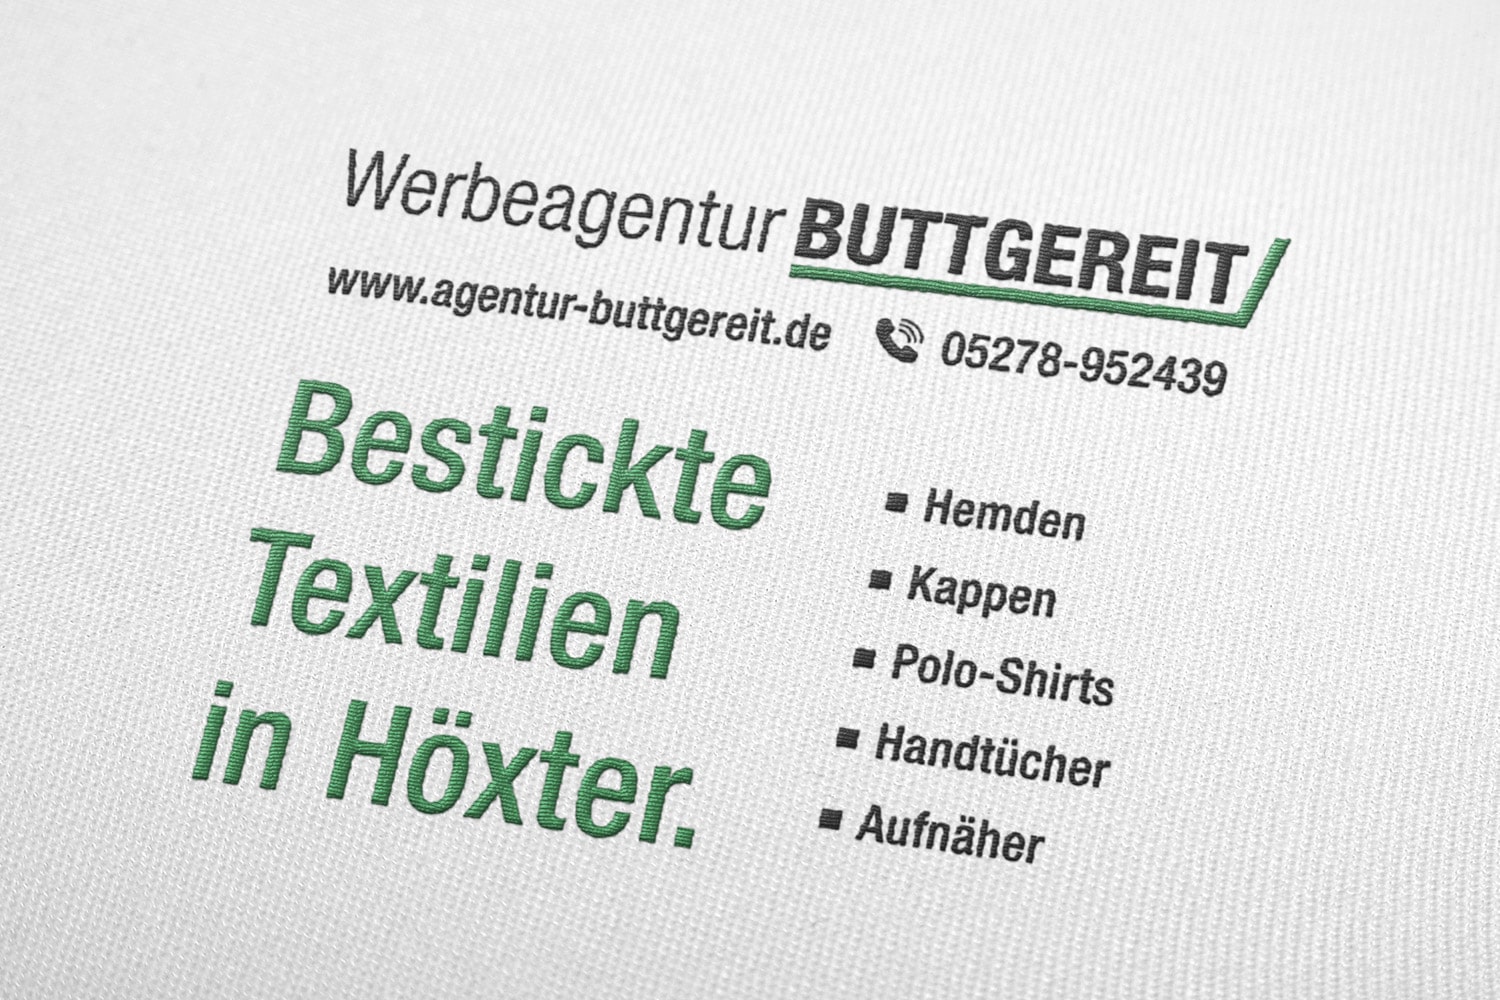 Bestickte Textilien in Höxter - Hemden, Kappen, Poloshirts, Handtücher, Aufnäher